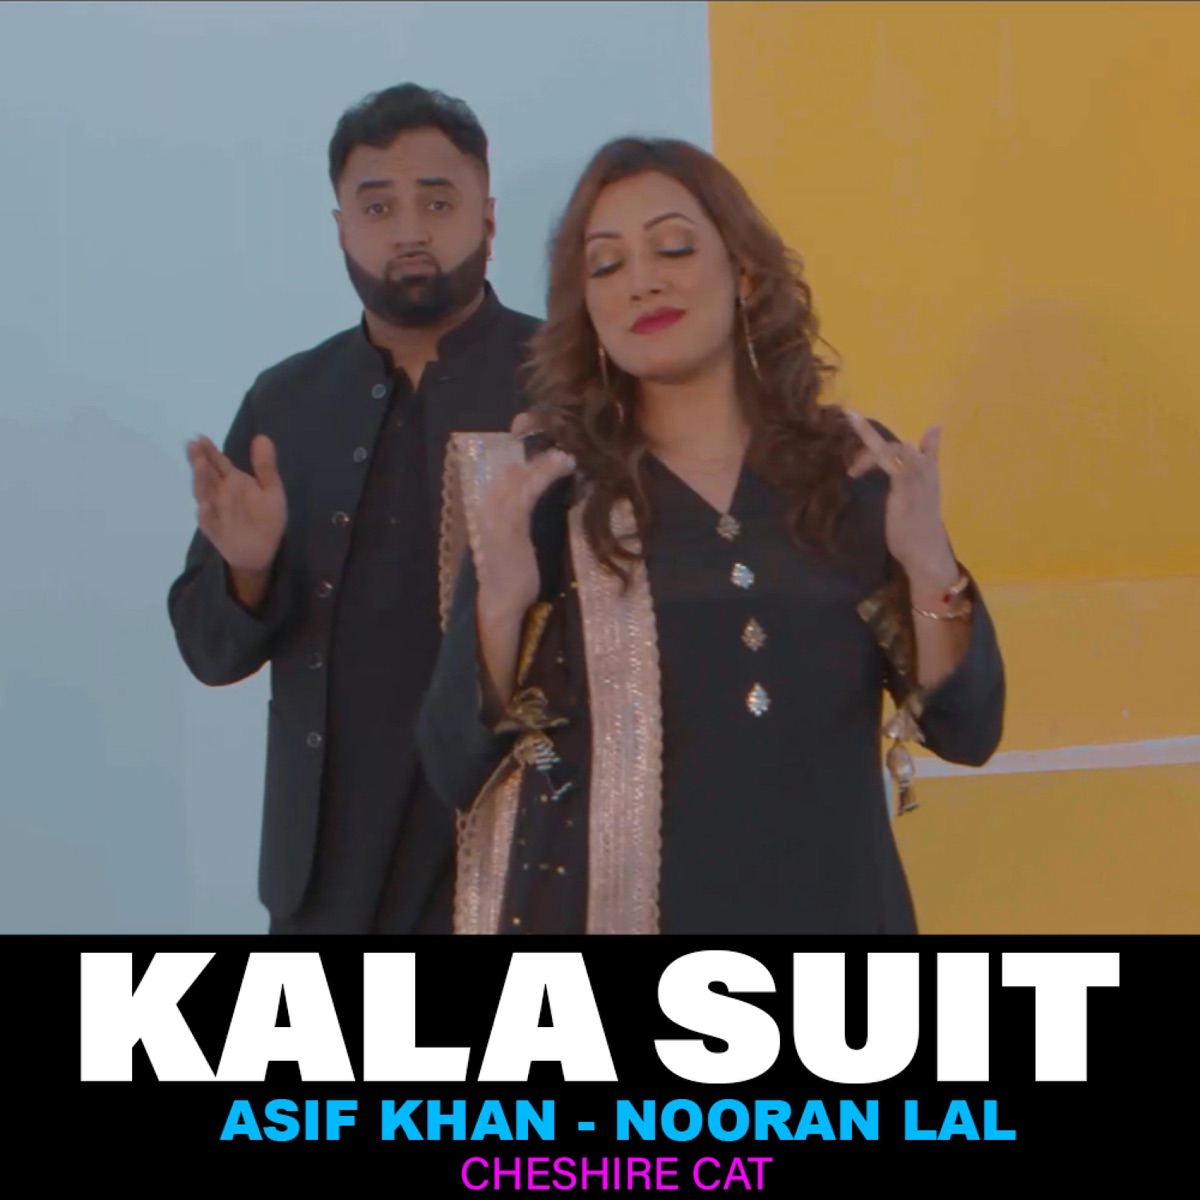 VIDEO: समर सिंह की एक्ट्रेस ने 'काला सूट सलवरवा' पहनकर झाड़ा स्वैग, एक दिन  में बटोरे लिए धुंआधार Views - samar singh and shilpi raj new song kala  shoot salwarwa crossed 1